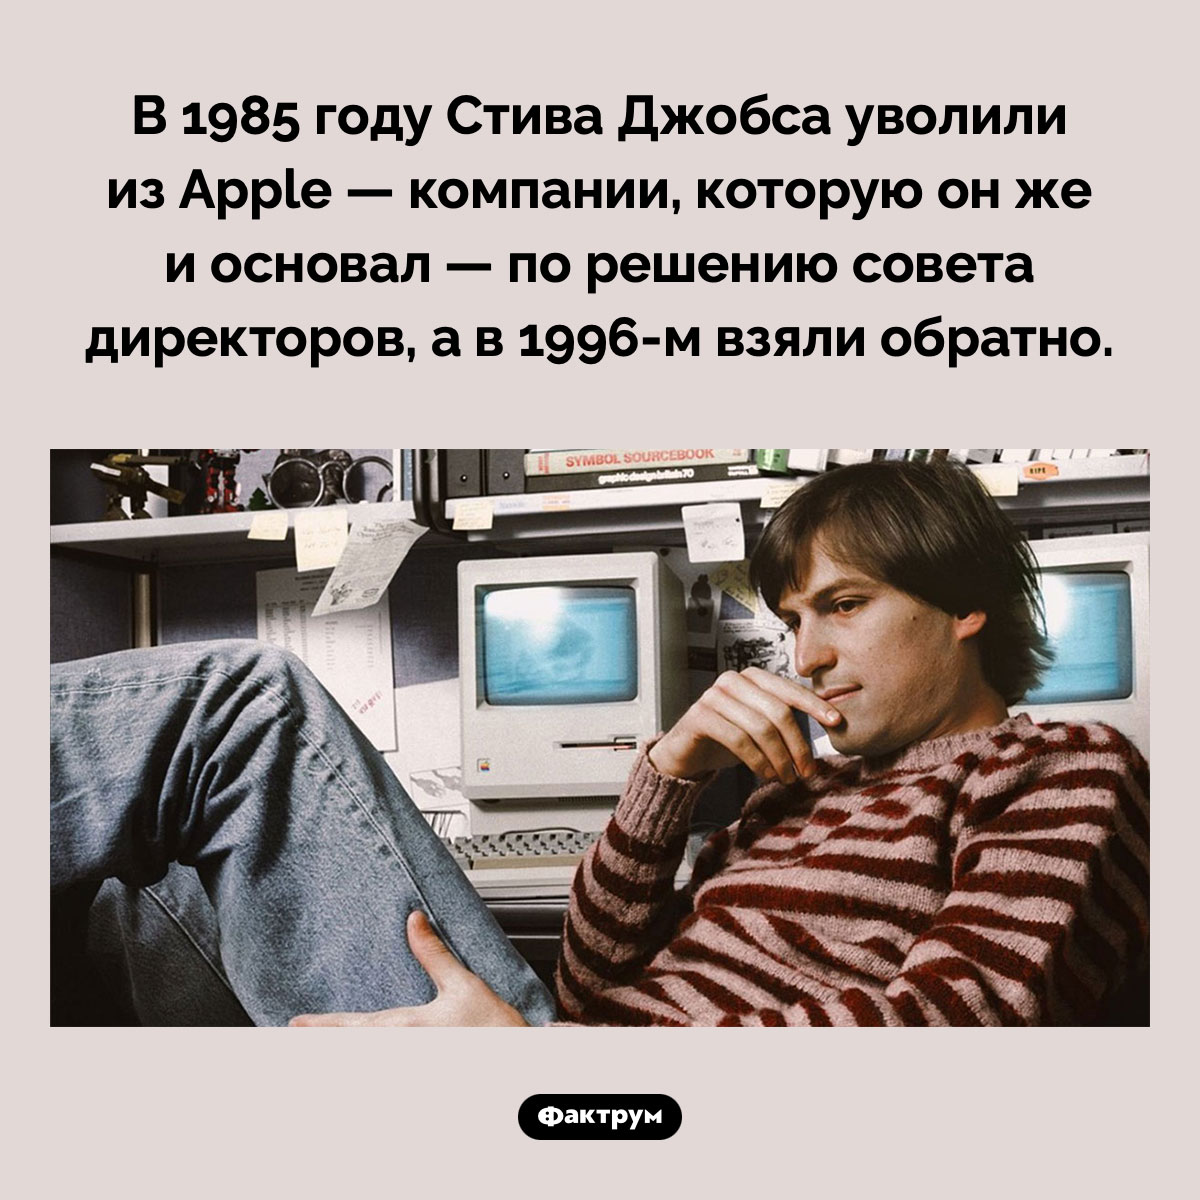 В 1985 году Стива Джобса уволили из Apple. В 1985 году Стива Джобса уволили из Apple — компании, которую он же и основал — по решению совета директоров, а в 1996-м взяли обратно.